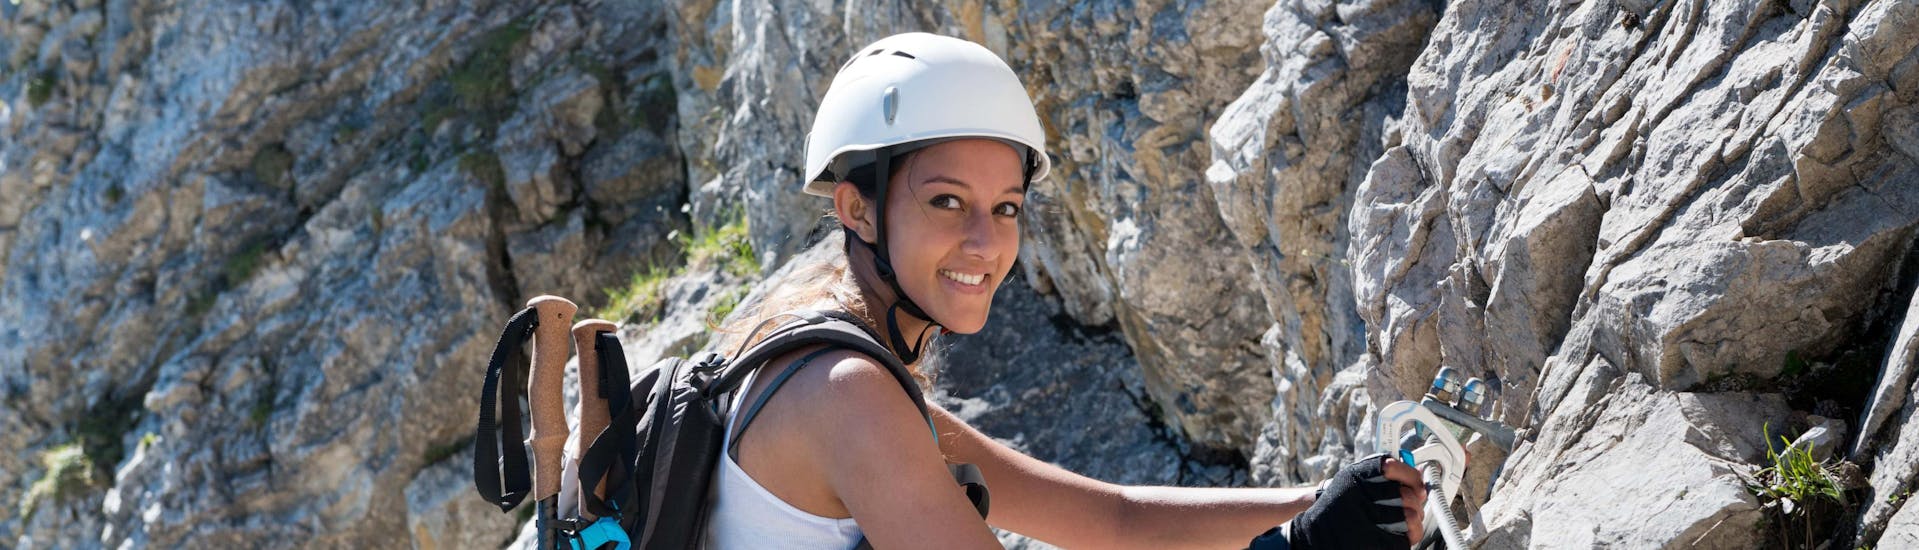 Aragón: Een jonge vrouw neemt deel aan een klettersteigtocht in een van de hotspots voor via ferrata.